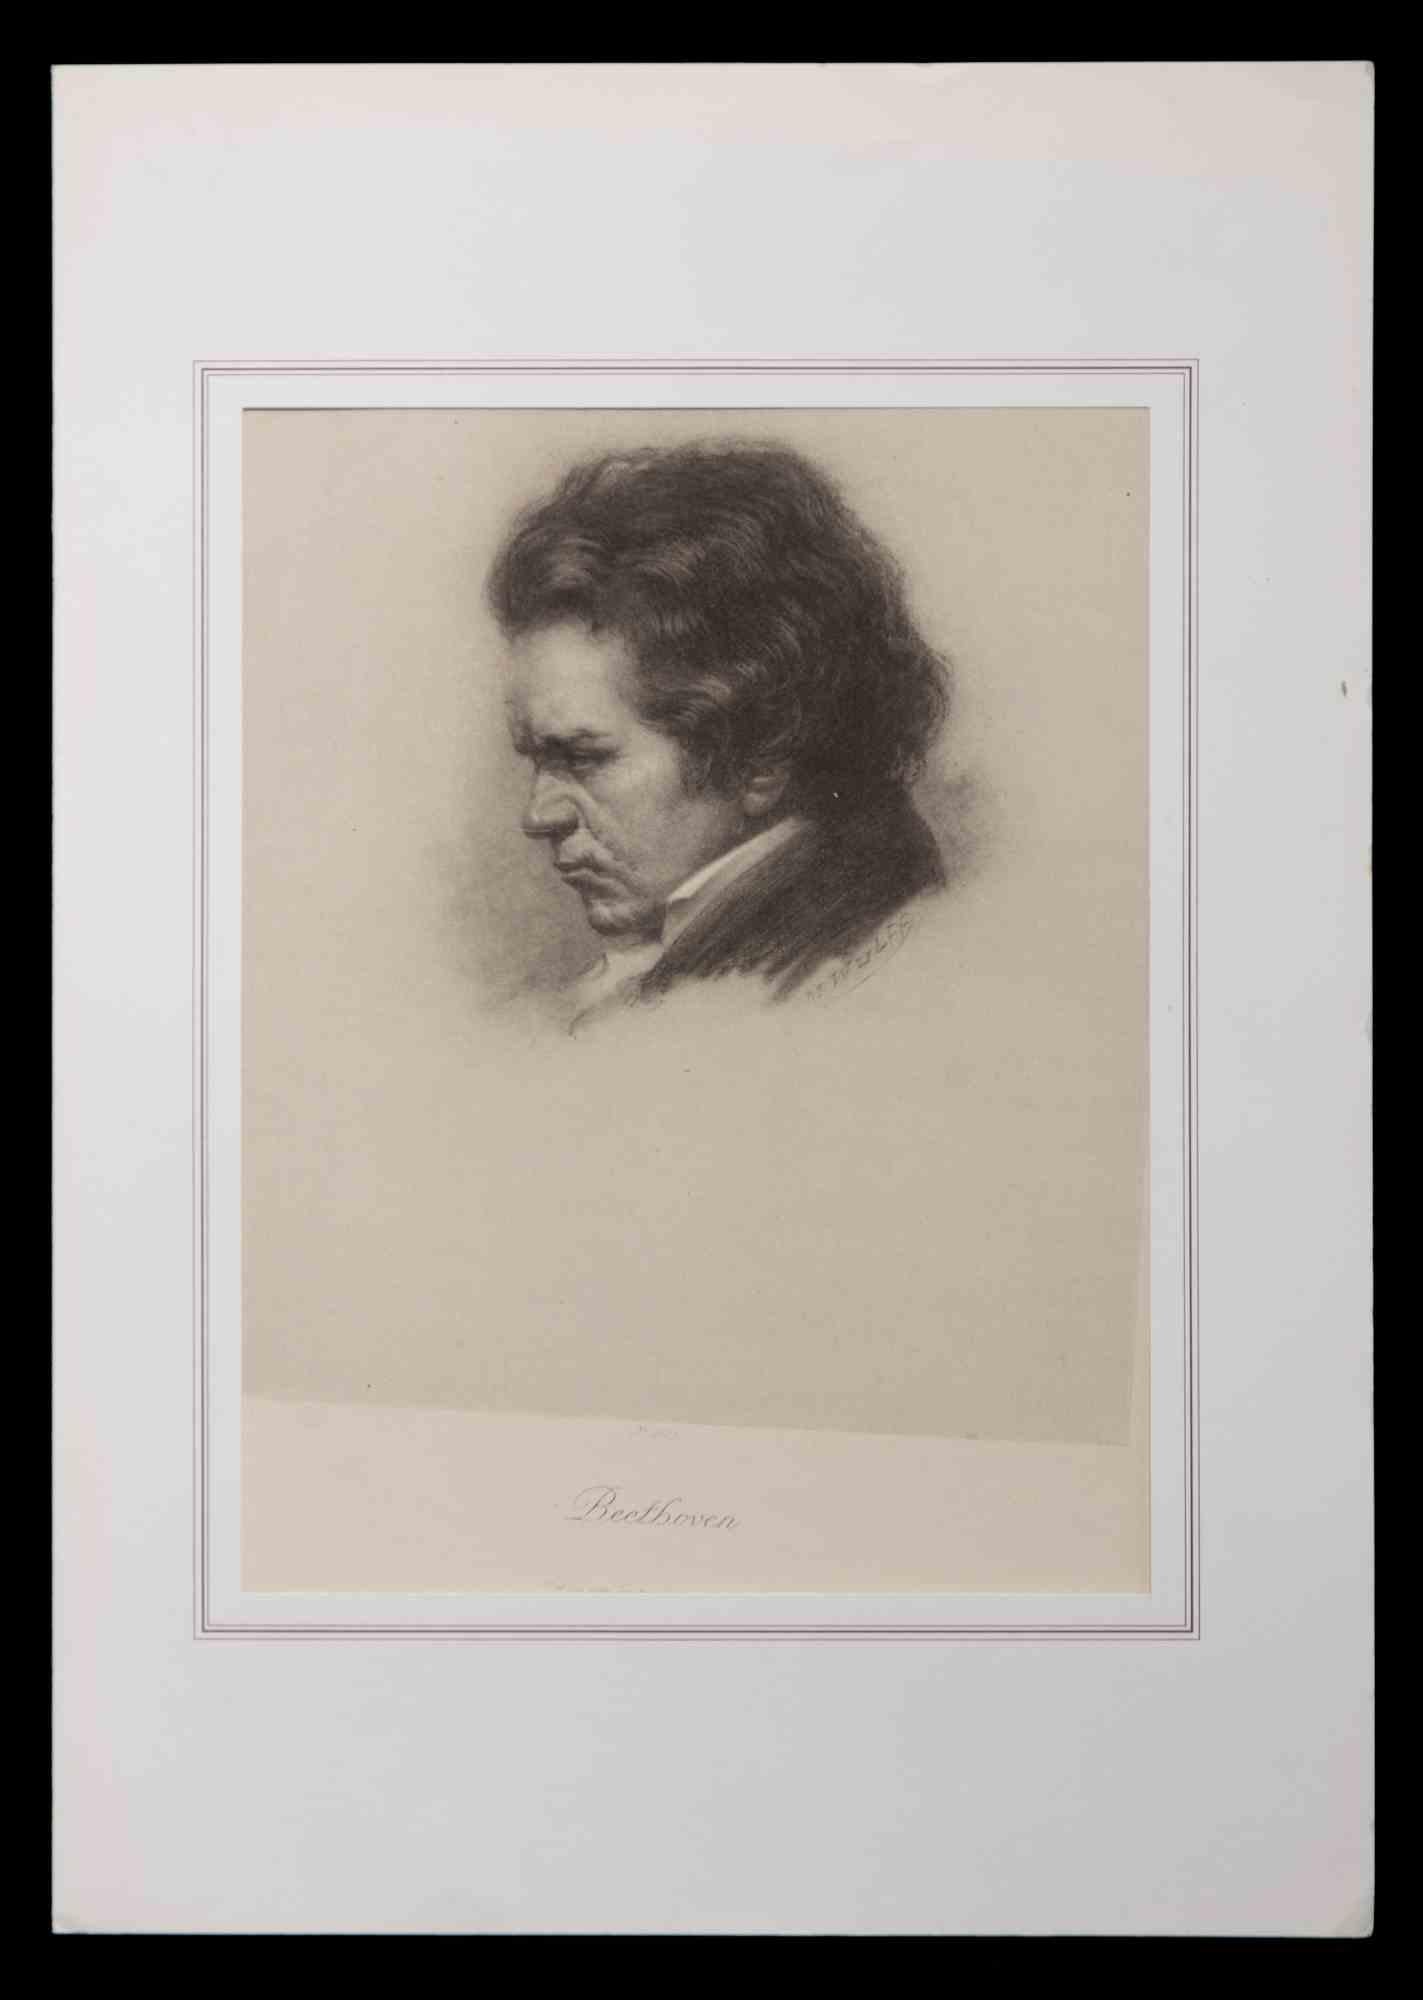 Das Porträt von Ludwig van Beethoven ist ein  Kunstwerk von Max Wulff aus dem Jahr 1920.

Schwarz-Weiß-Lithographie.

Nicht unterzeichnet. 